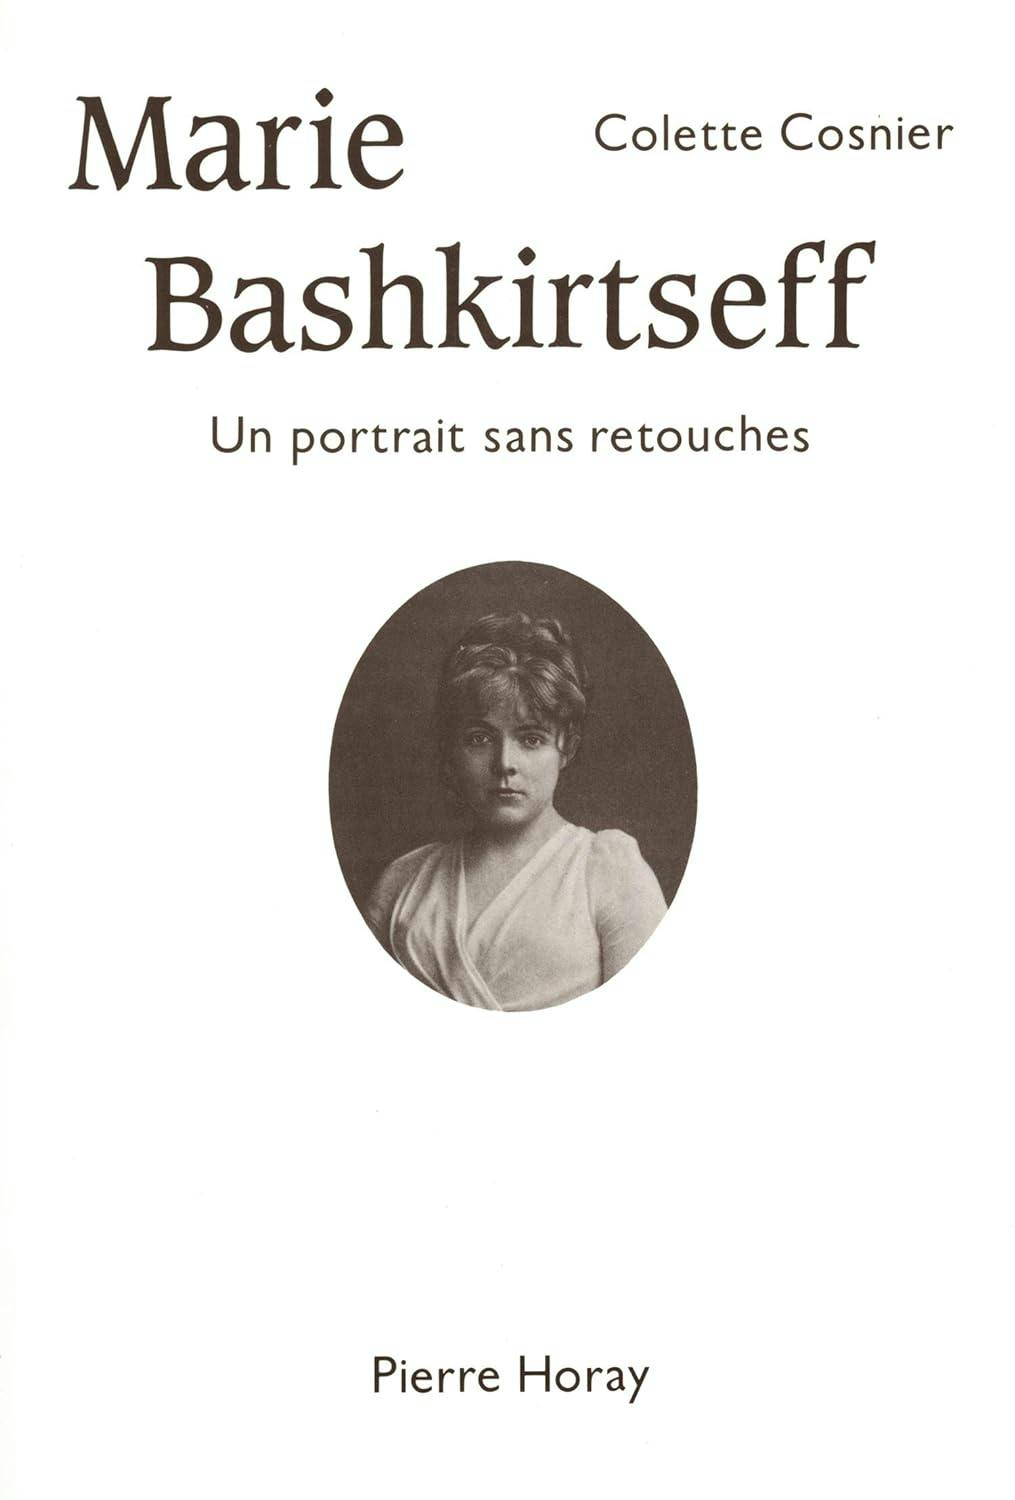 Marie Bashkirtseff - Un portrait sans retouches, Colette Cosnier, éditions Pierre Horay